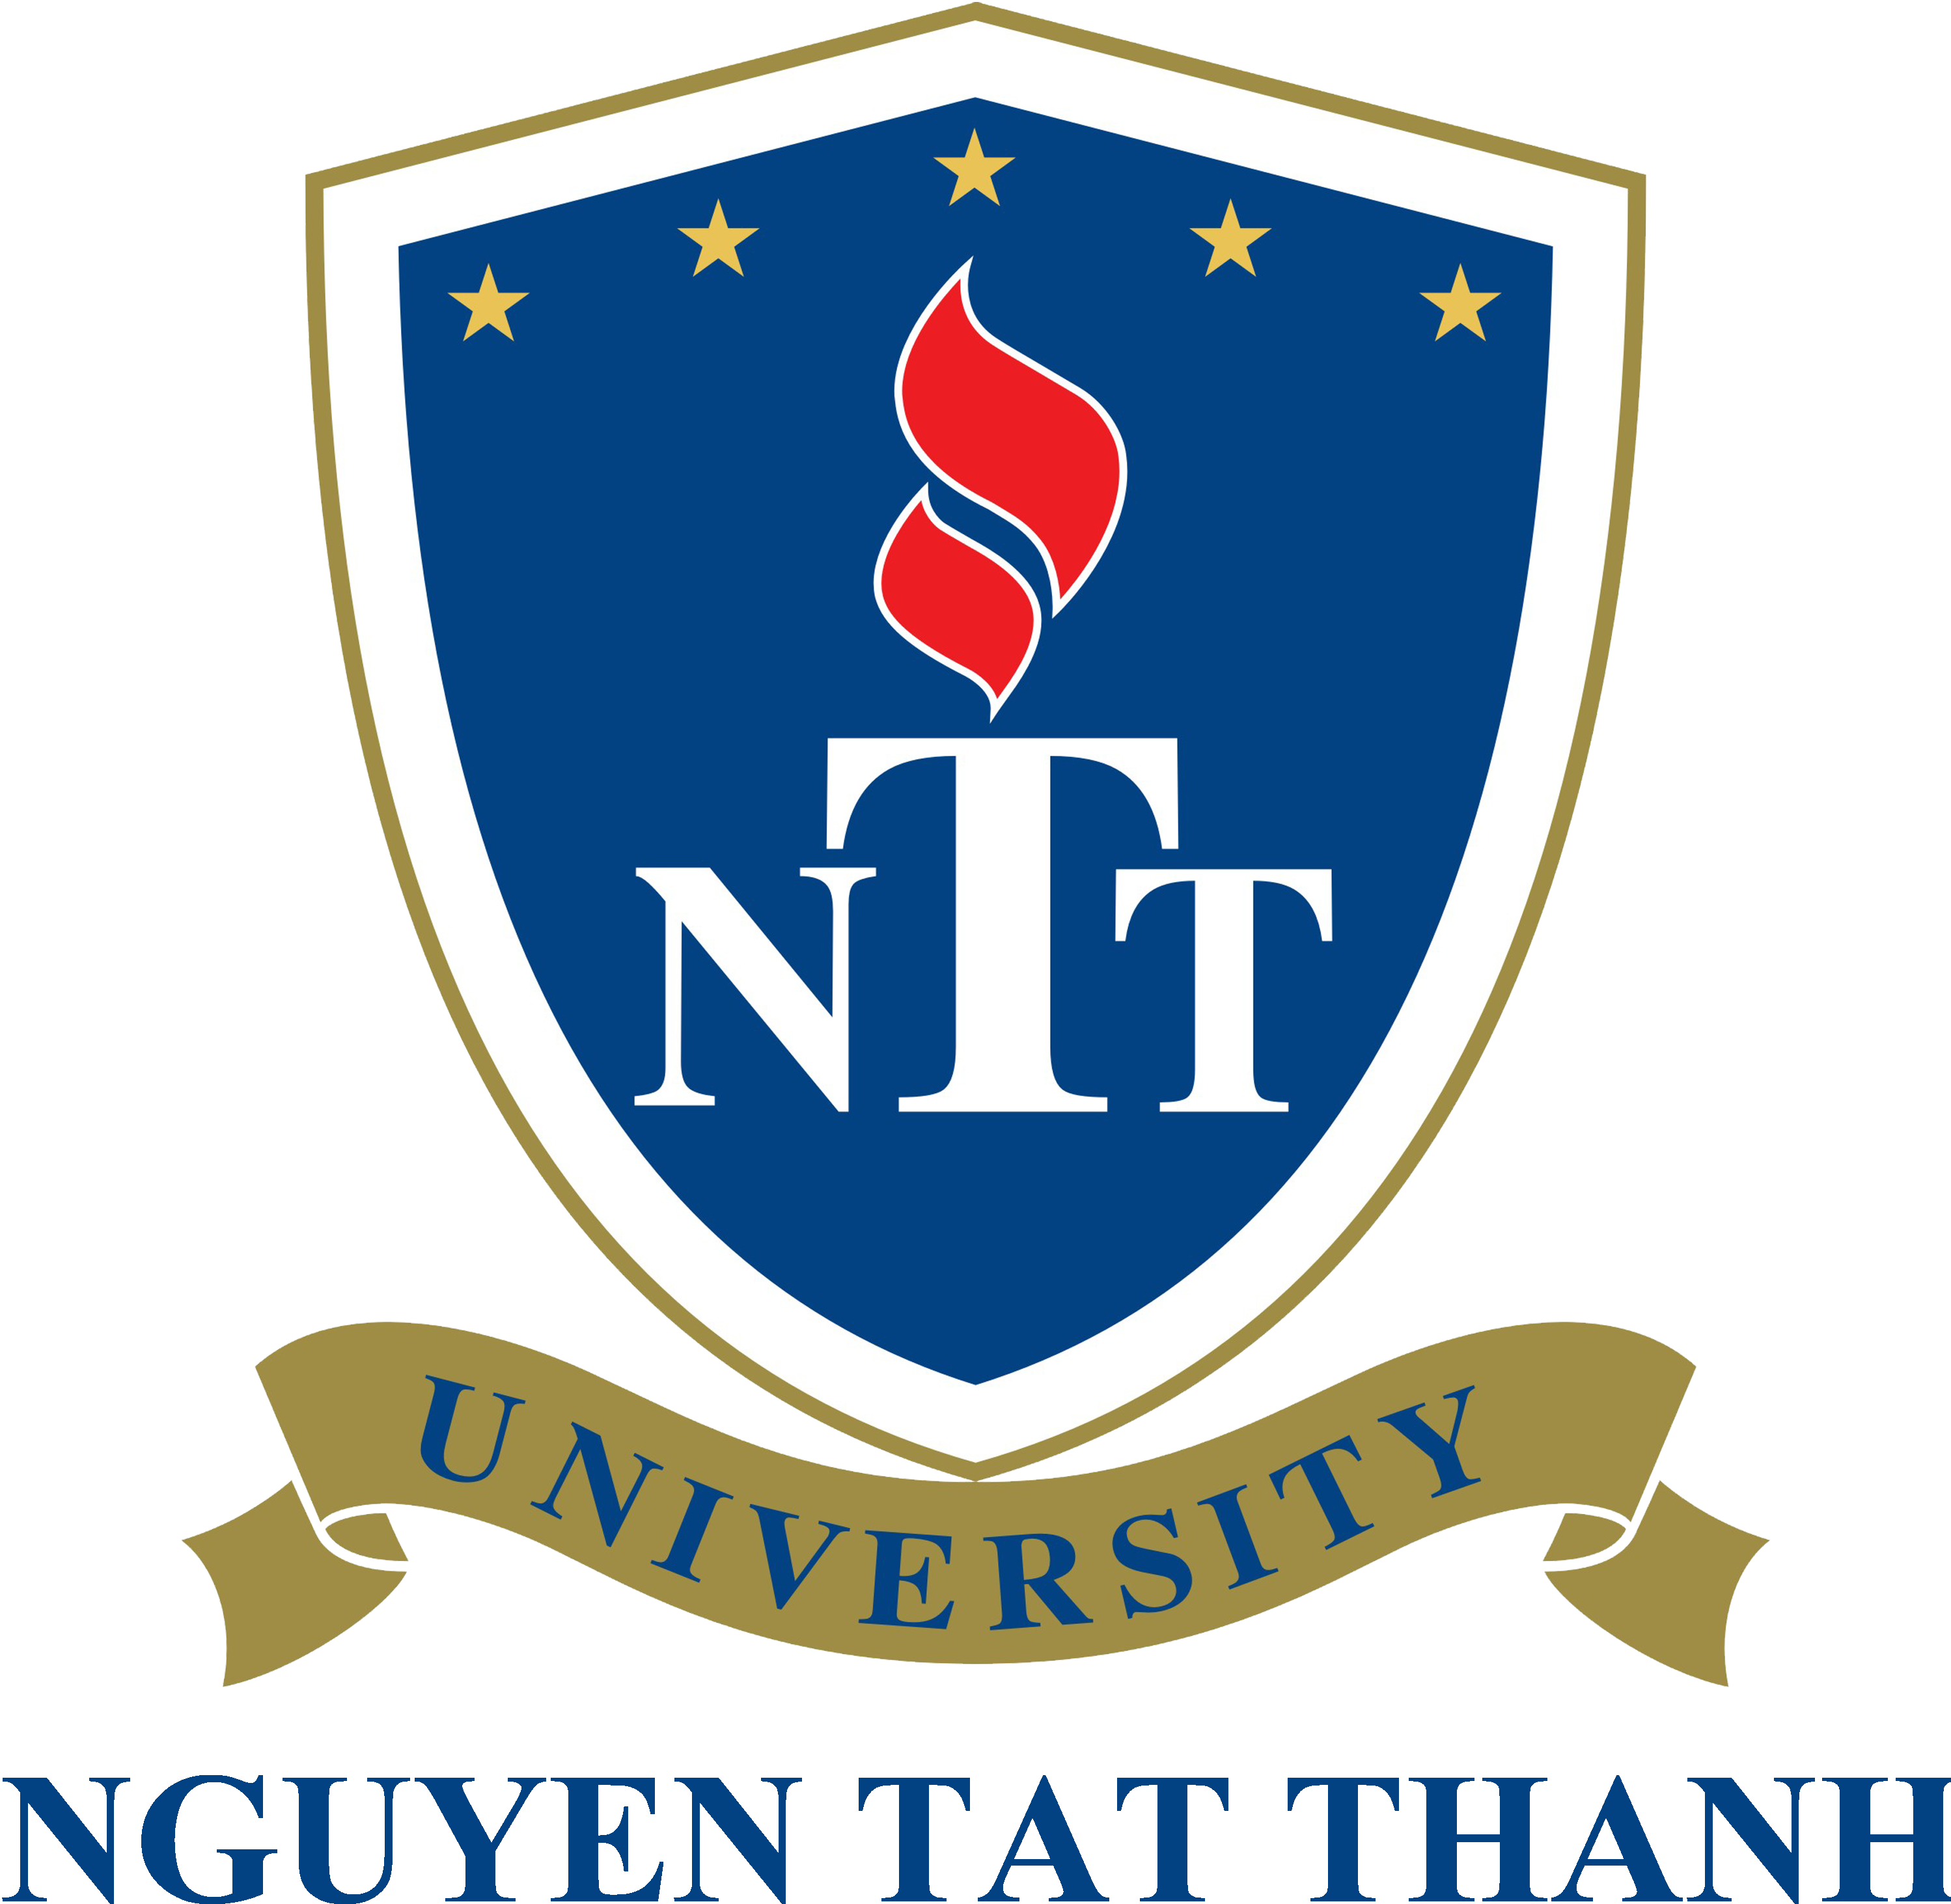 Lắp đặt hệ thống RFID và máy scan thông minh ET16 Plus tại TTTT-TV trường Đại học Nguyễn Tất Thành